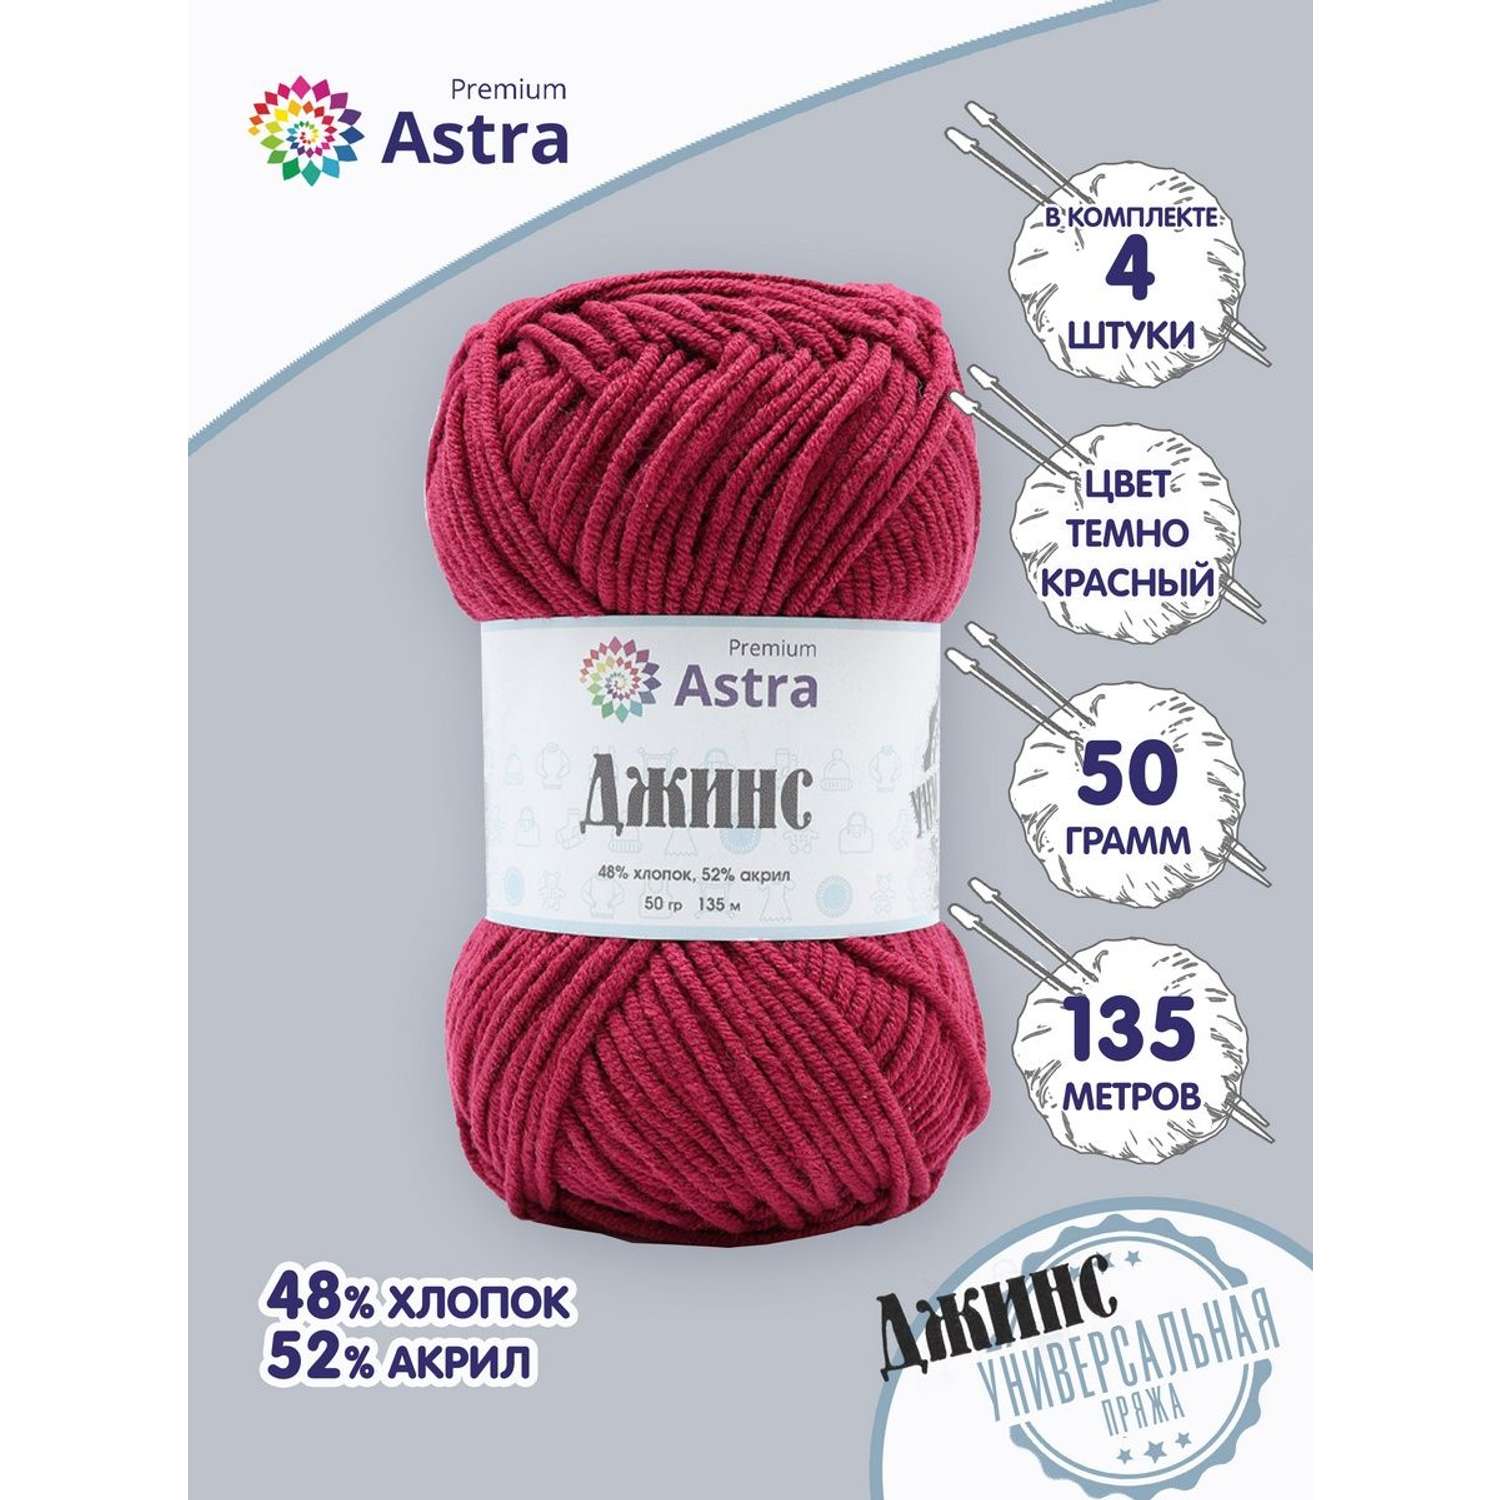 Пряжа для вязания Astra Premium джинс для повседневной одежды акрил хлопок 50 гр 135 м 190 темно-красный 4 мотка - фото 1